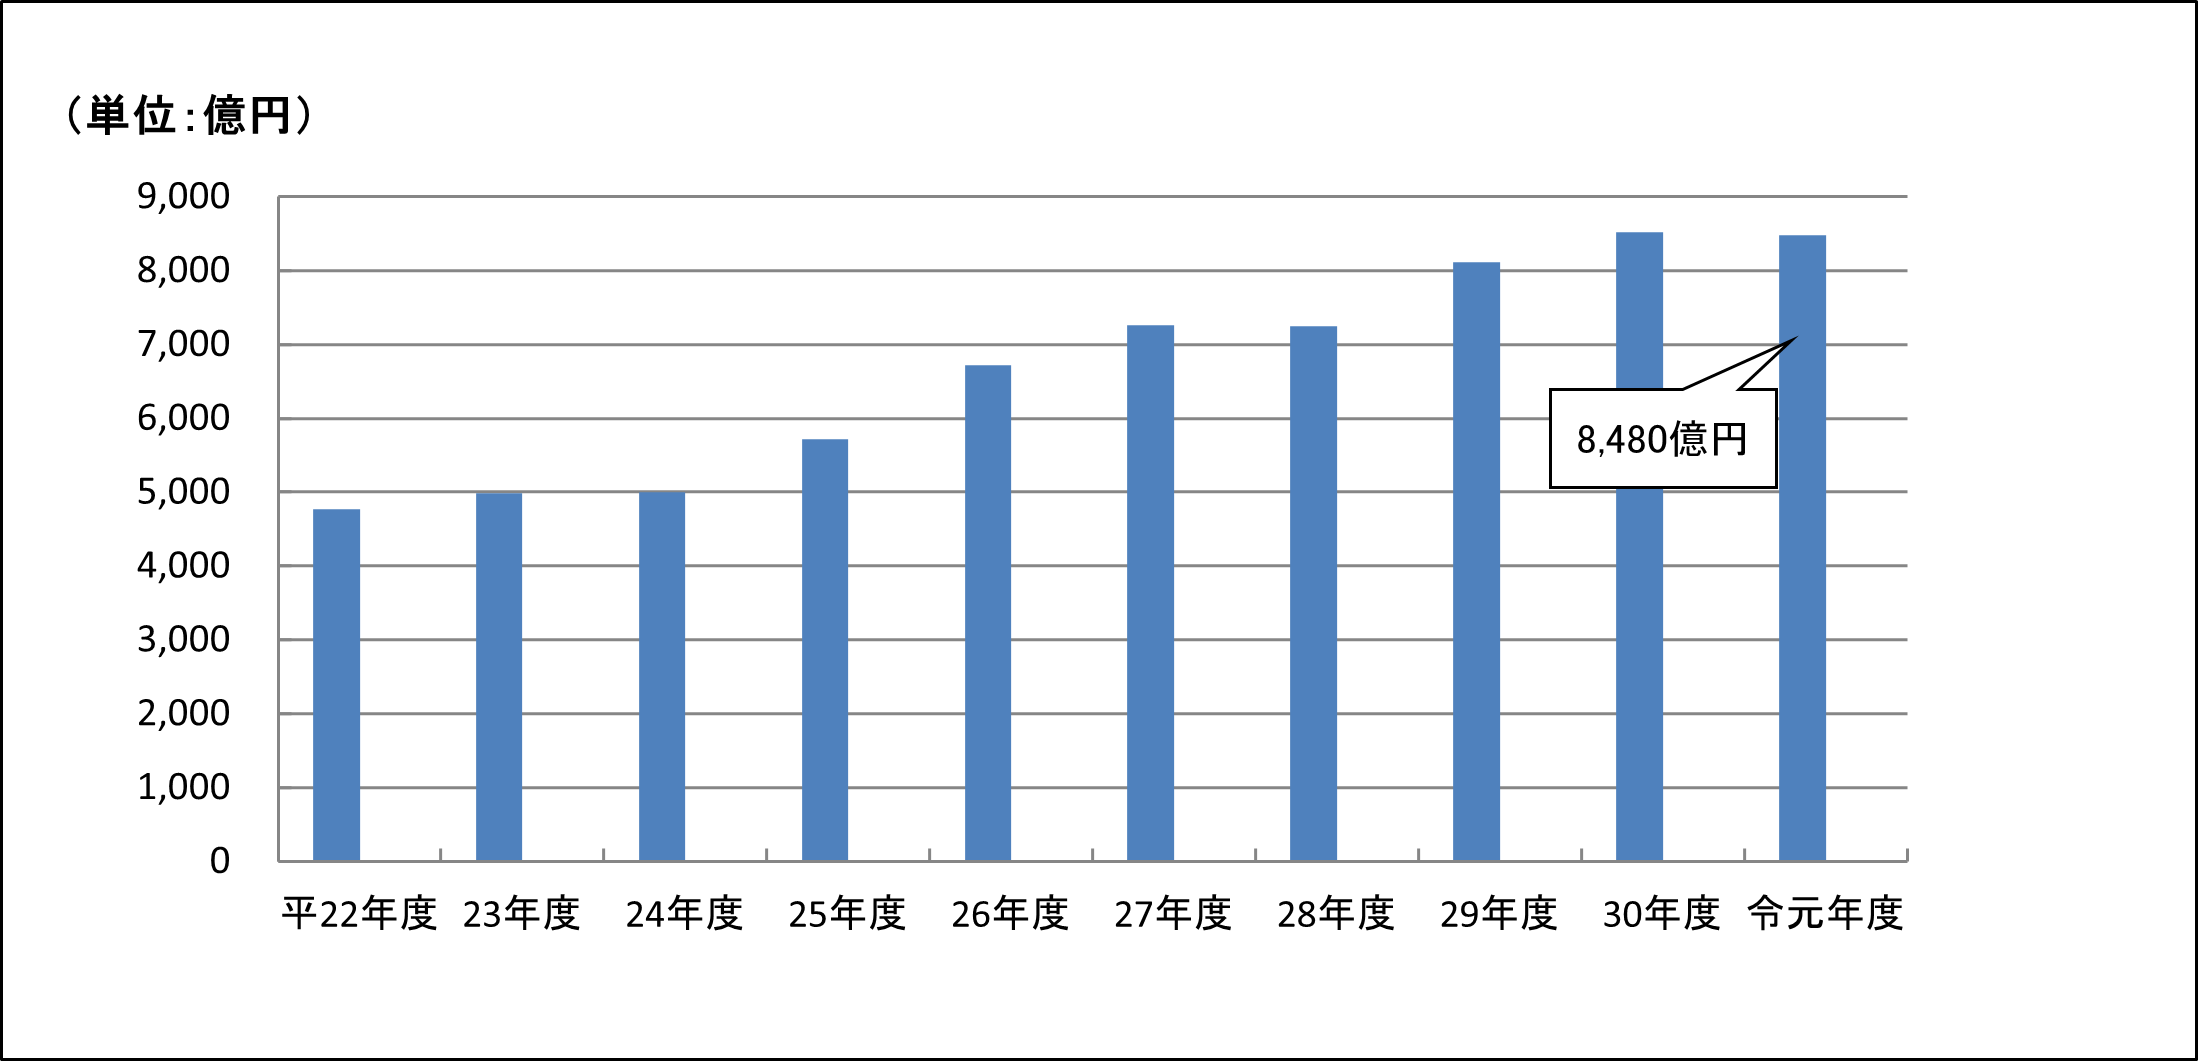 平成22事務年度から令和元事務年度の申告所得金額の推移のグラフ